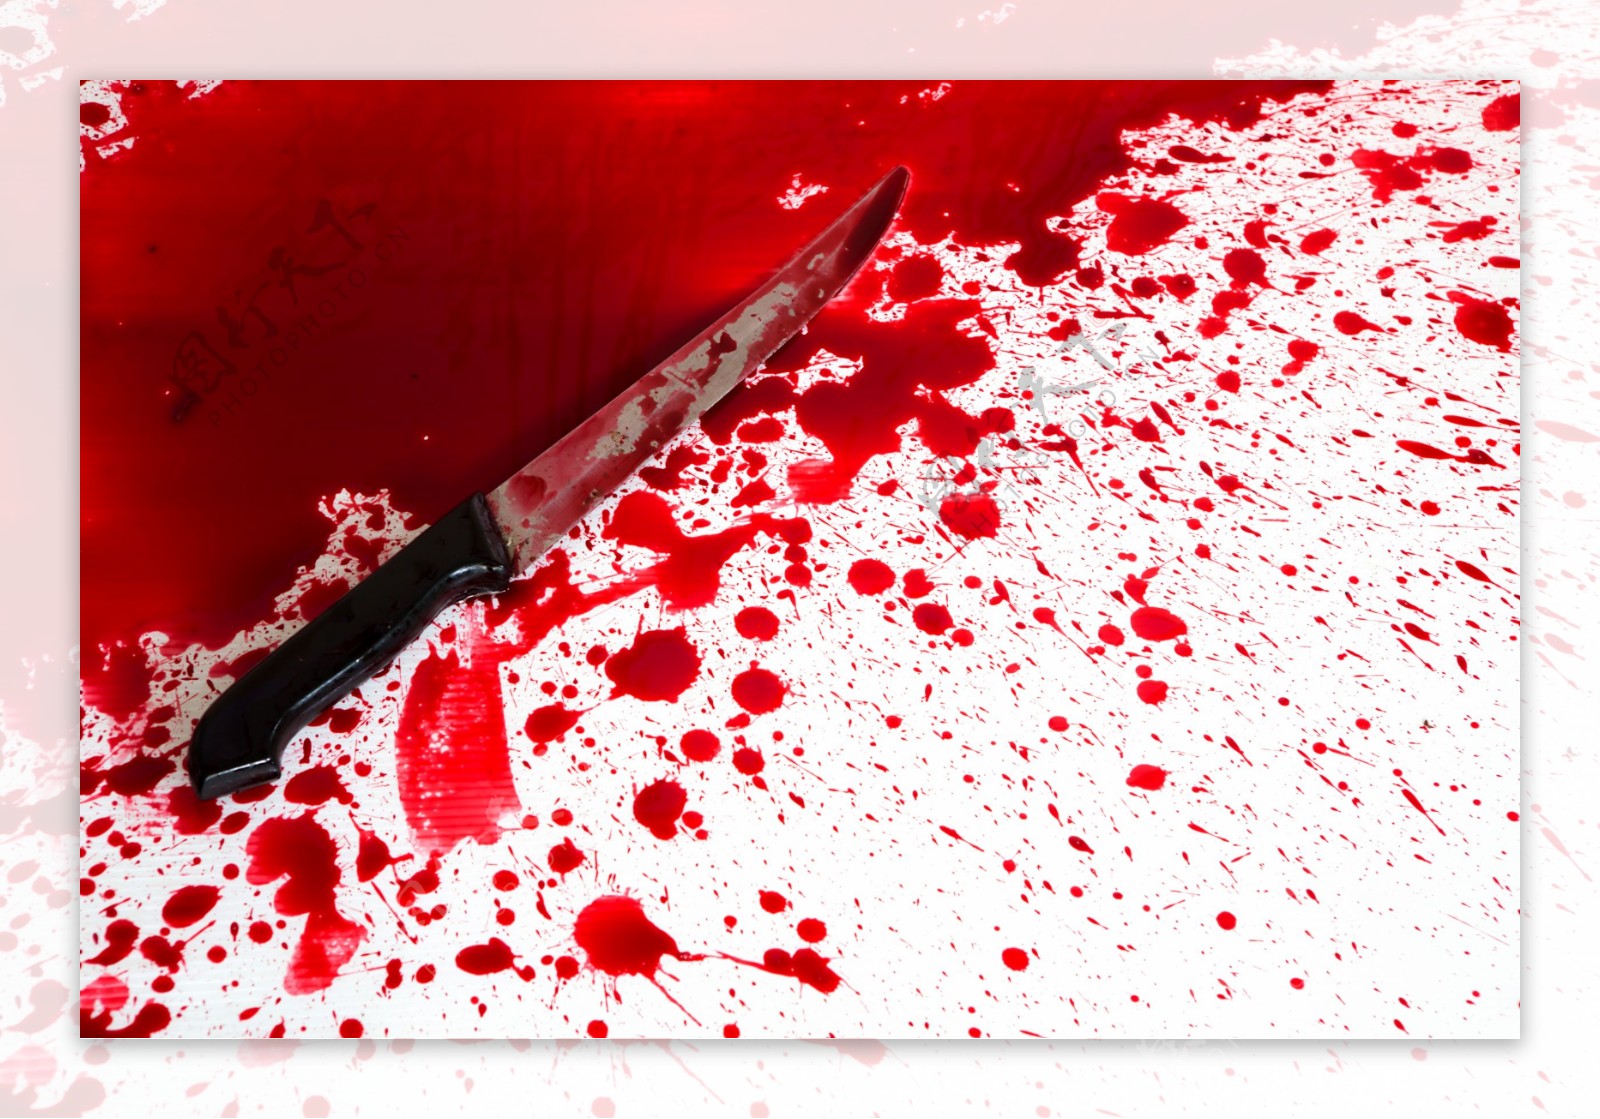 凶器与血迹素材图片